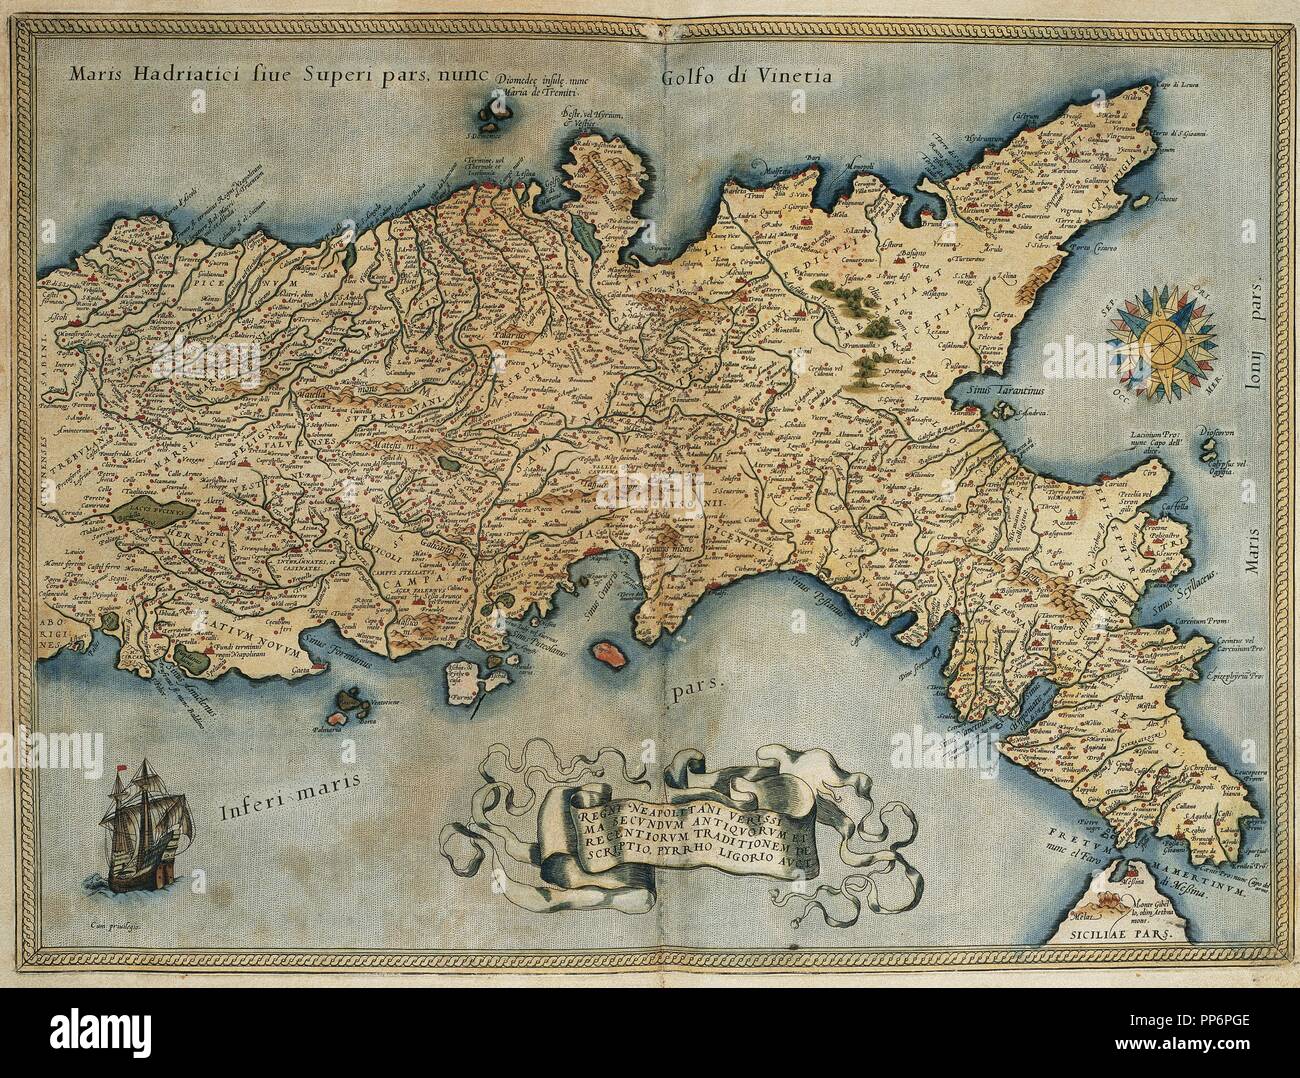 Karte des Königreichs Neapel. Theatrum Orbis Terrarum von Abraham Ortelius (1527-1598). Erste Ausgabe. Antwerpen, 1574. Bibliothek von Katalonien. Barcelona. Spanien. Stockfoto